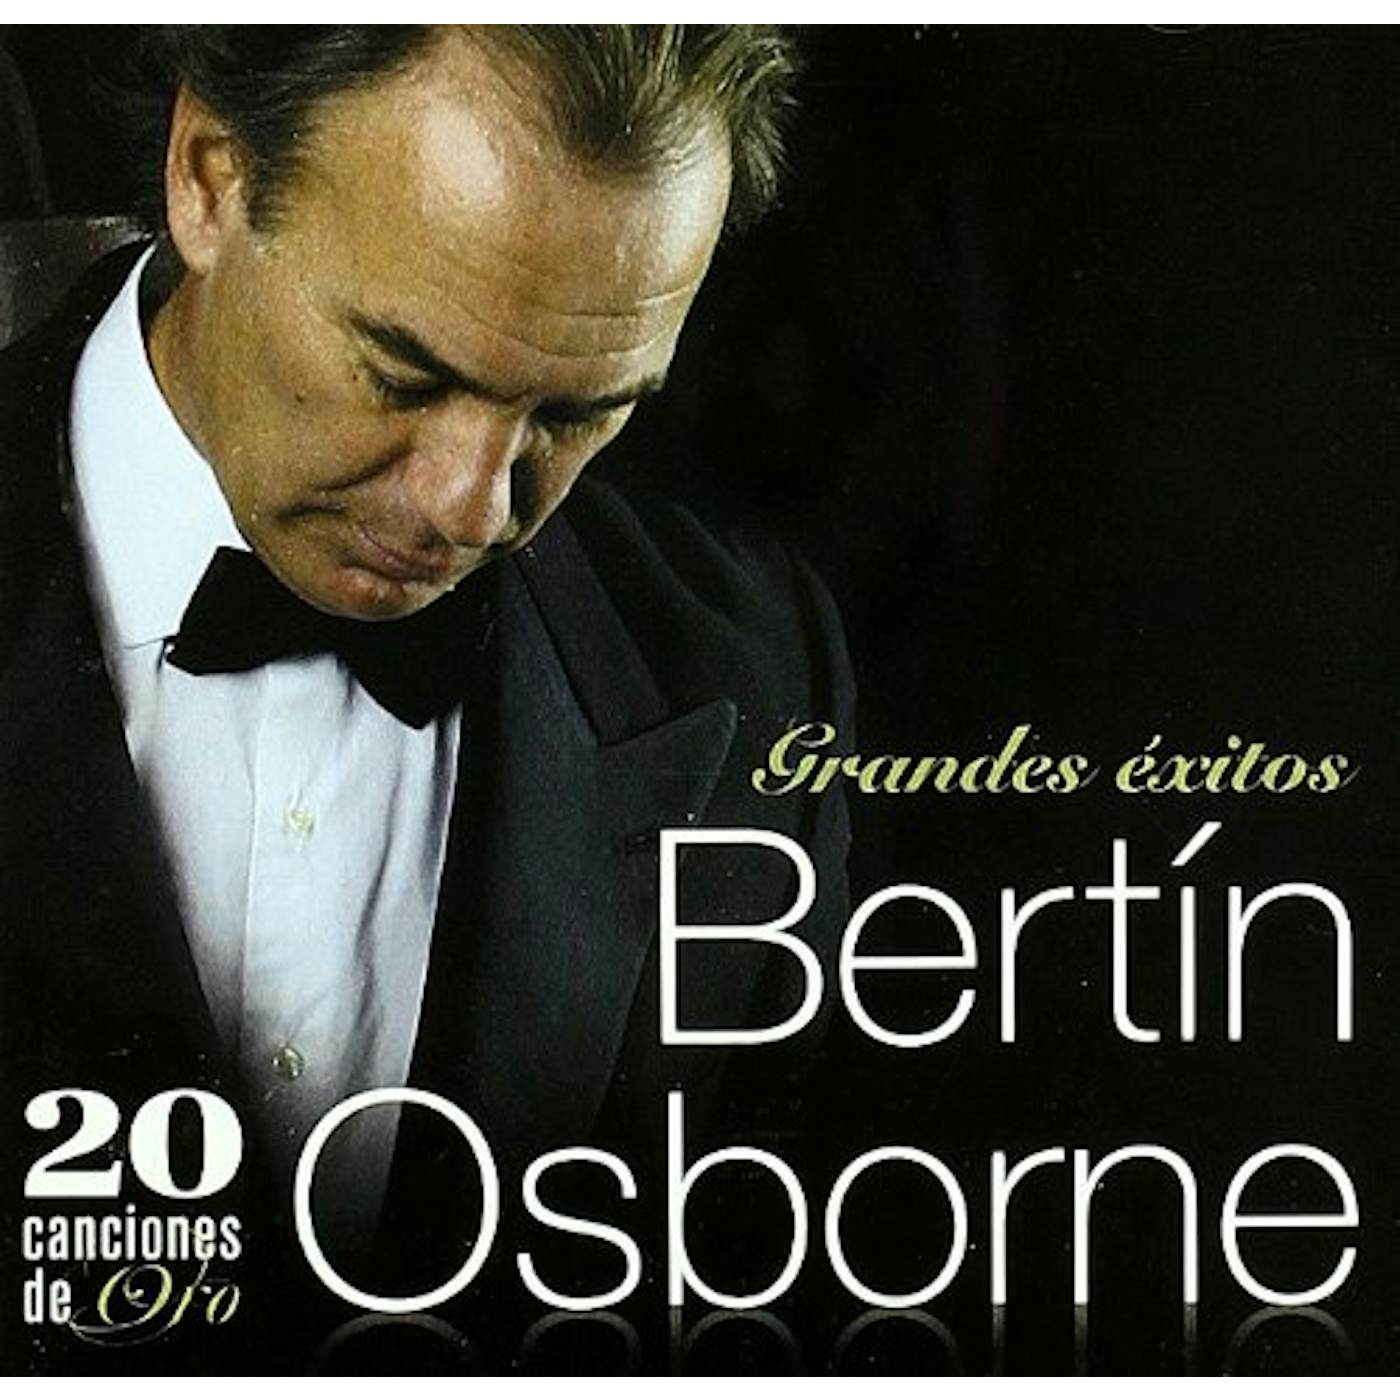 Bertin Osborne 20 CANCIONES DE ORO CD